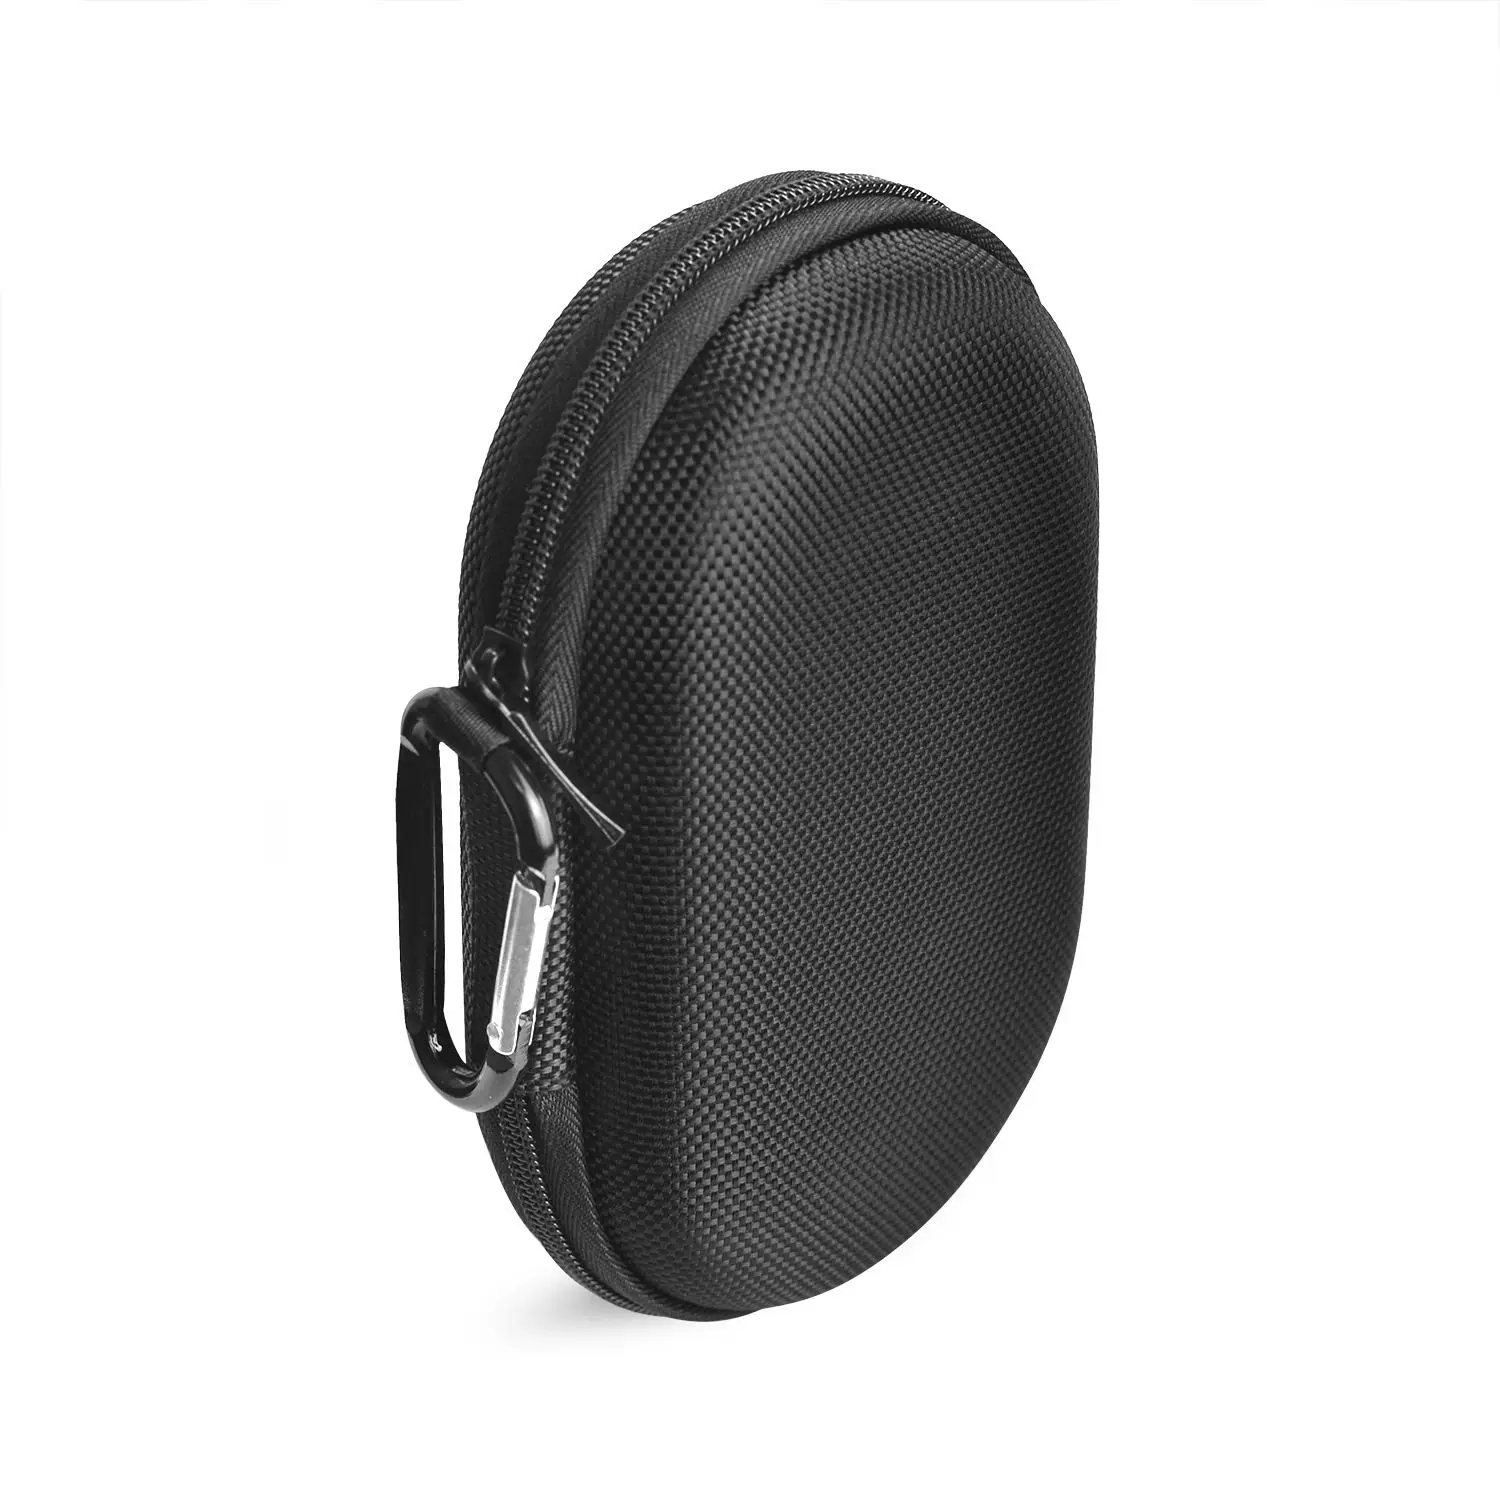 LGFM-для переноски защитной акустической коробки чехол сумка чехол для Bang& Olufsen Beoplay P2 Bluetooth динамик. Подходит для шнуров